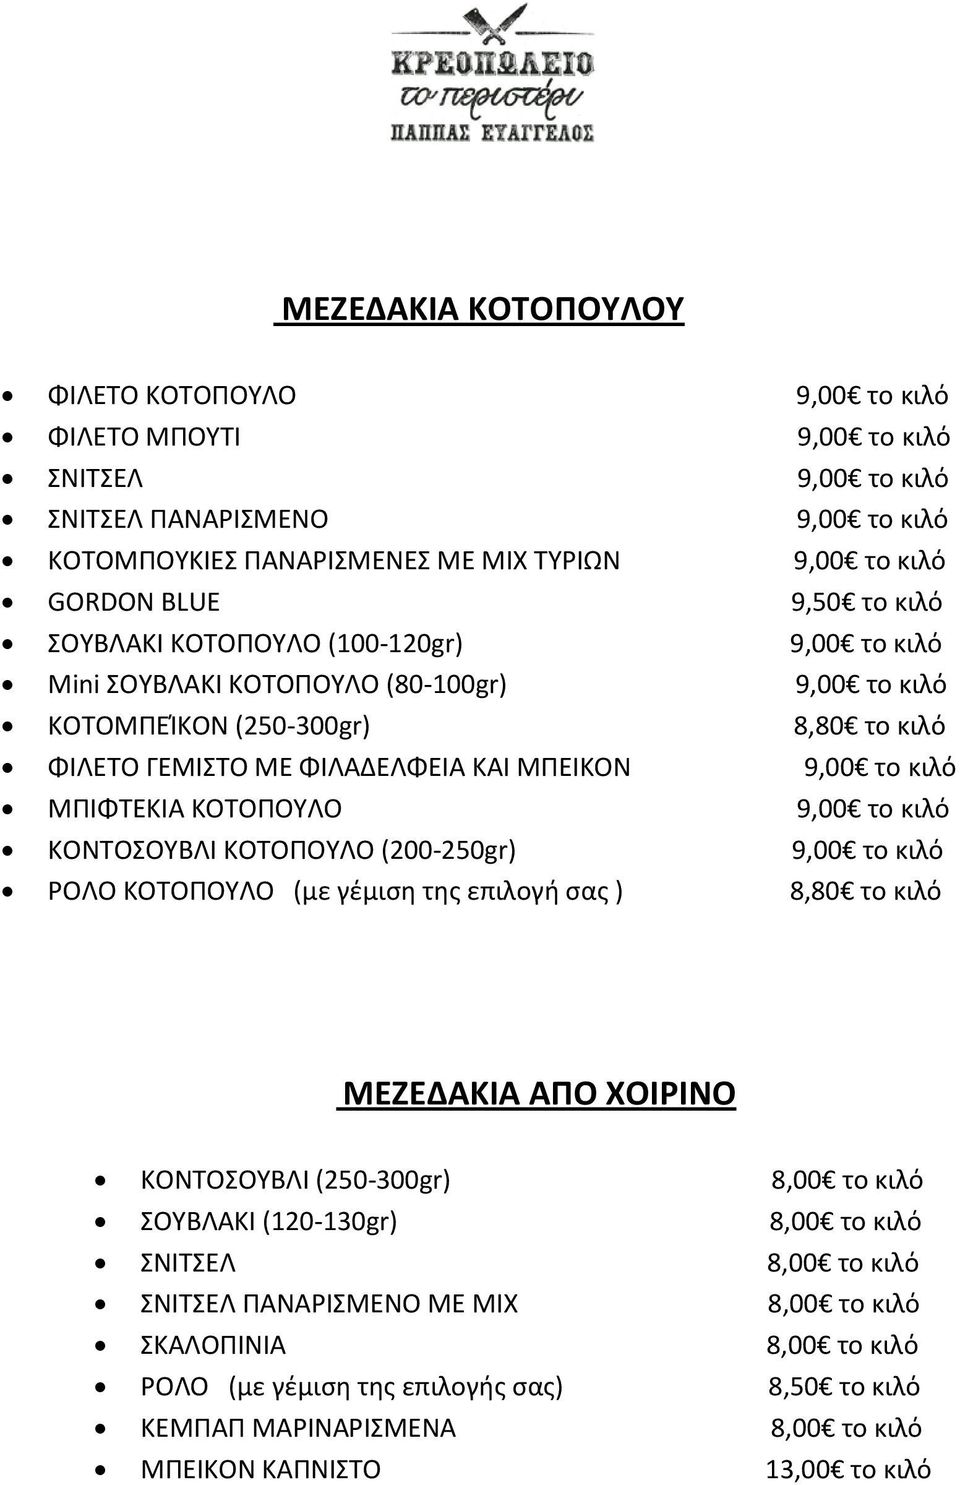 ΜΠΙΦΤΕΚΙΑ ΚΟΤΟΠΟΥΛΟ 9,00 το κιλό ΚΟΝΤΟΣΟΥΒΛΙ ΚΟΤΟΠΟΥΛΟ (200-250gr) 9,00 το κιλό ΡΟΛΟ ΚΟΤΟΠΟΥΛΟ (με γέμιση της επιλογή σας ) 8,80 το κιλό ΜΕΖΕΔΑΚΙΑ ΑΠΟ ΧΟΙΡΙΝΟ ΚΟΝΤΟΣΟΥΒΛΙ (250-300gr) 8,00 το κιλό